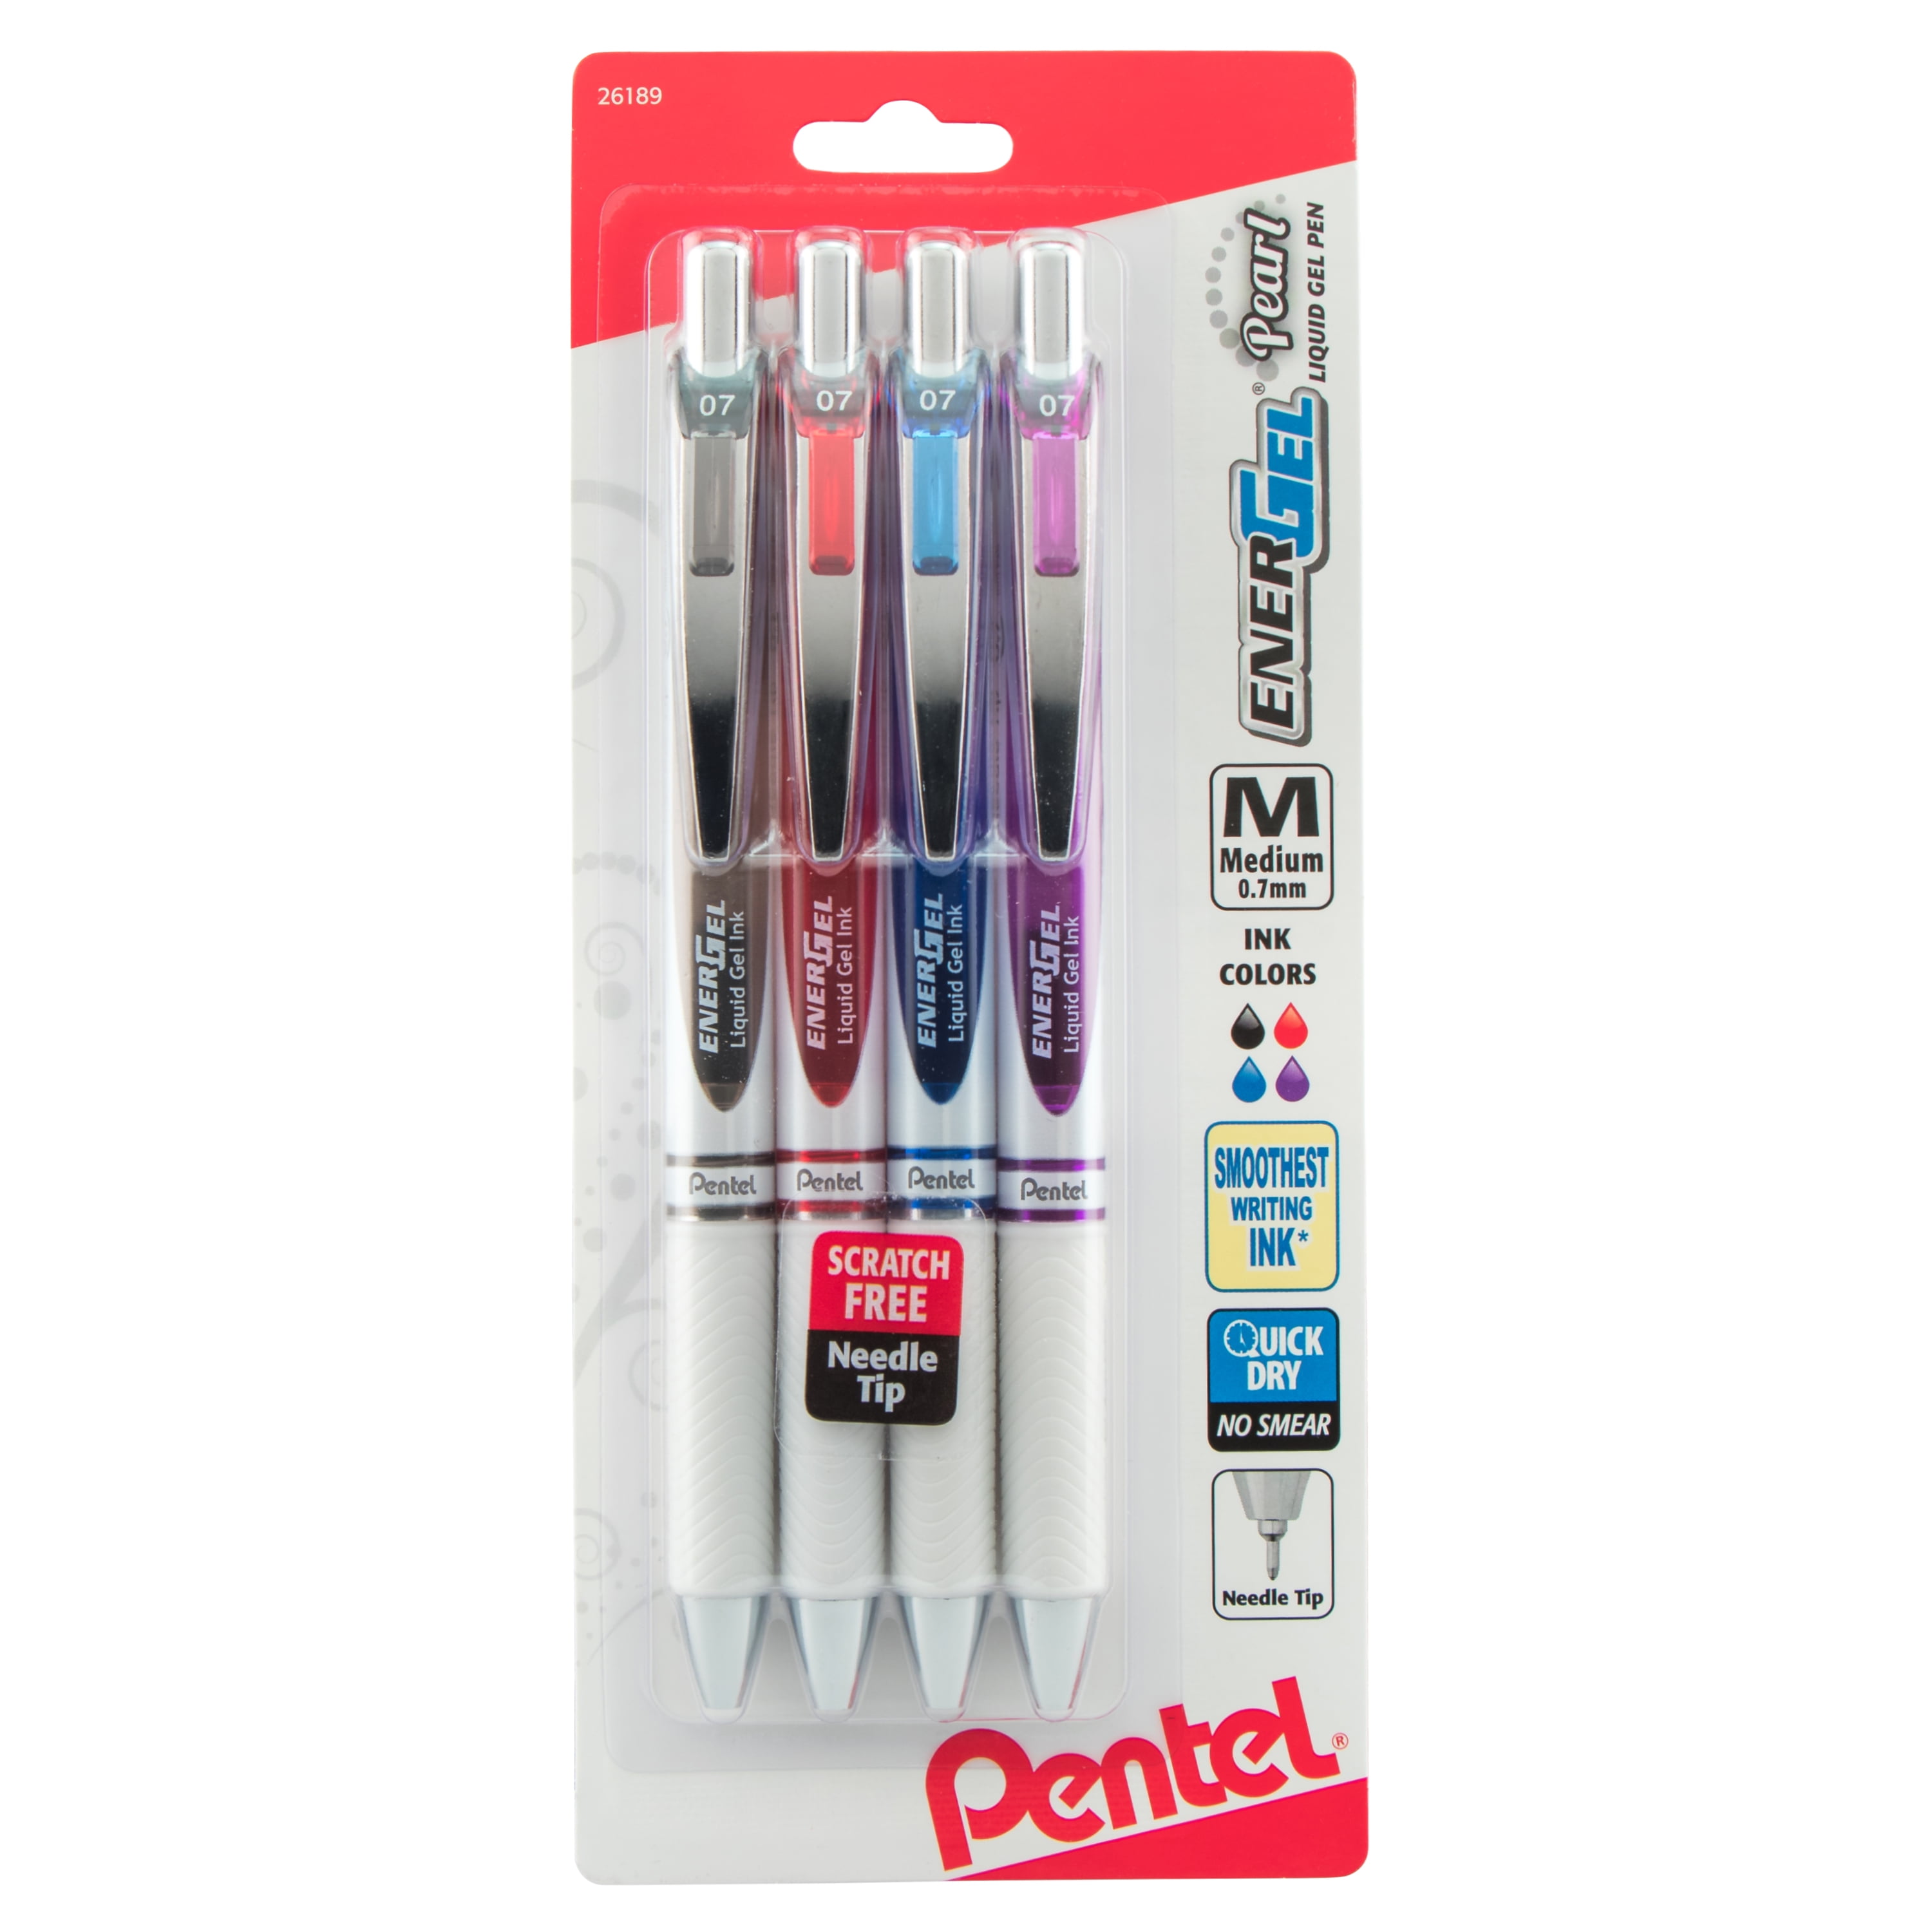 vooroordeel Mislukking Emigreren Pentel Energel Pearl Gel Pen, 0.7mm Medium, Needle Tip, Assorted Ink, 4  Pack - Walmart.com